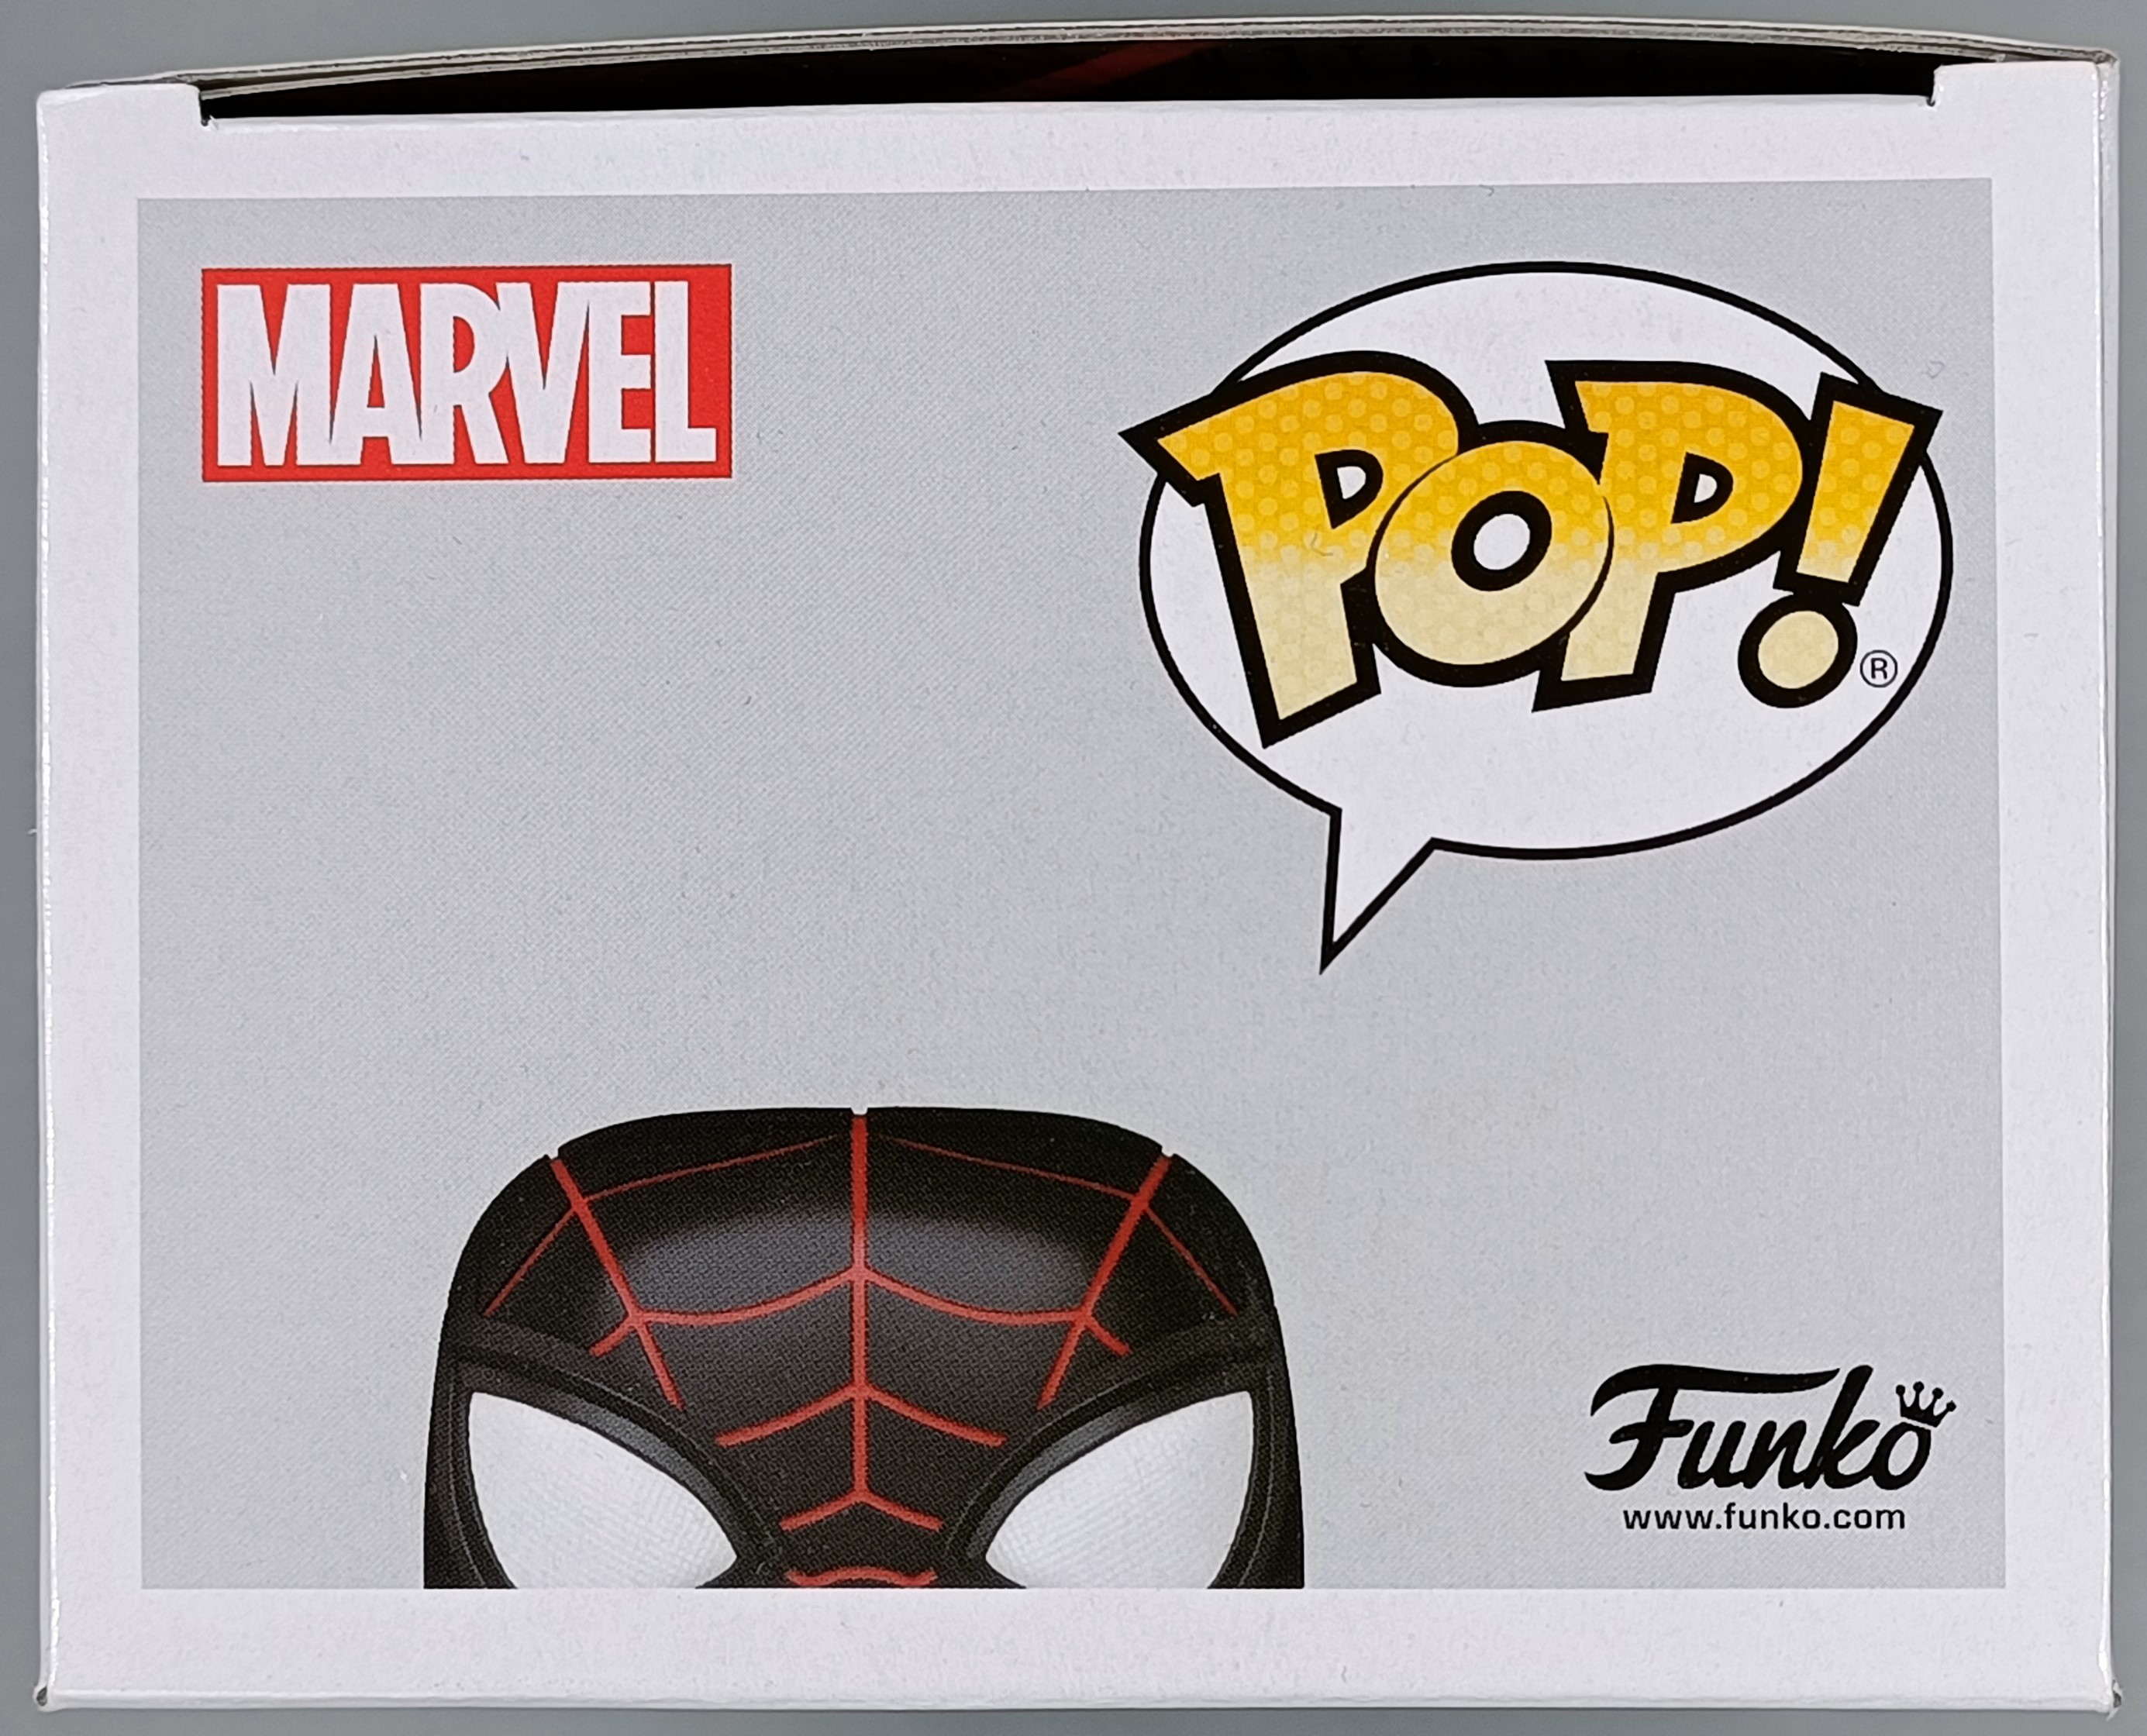 Pop Spiderman Advanced Tech Suit Marvel #772